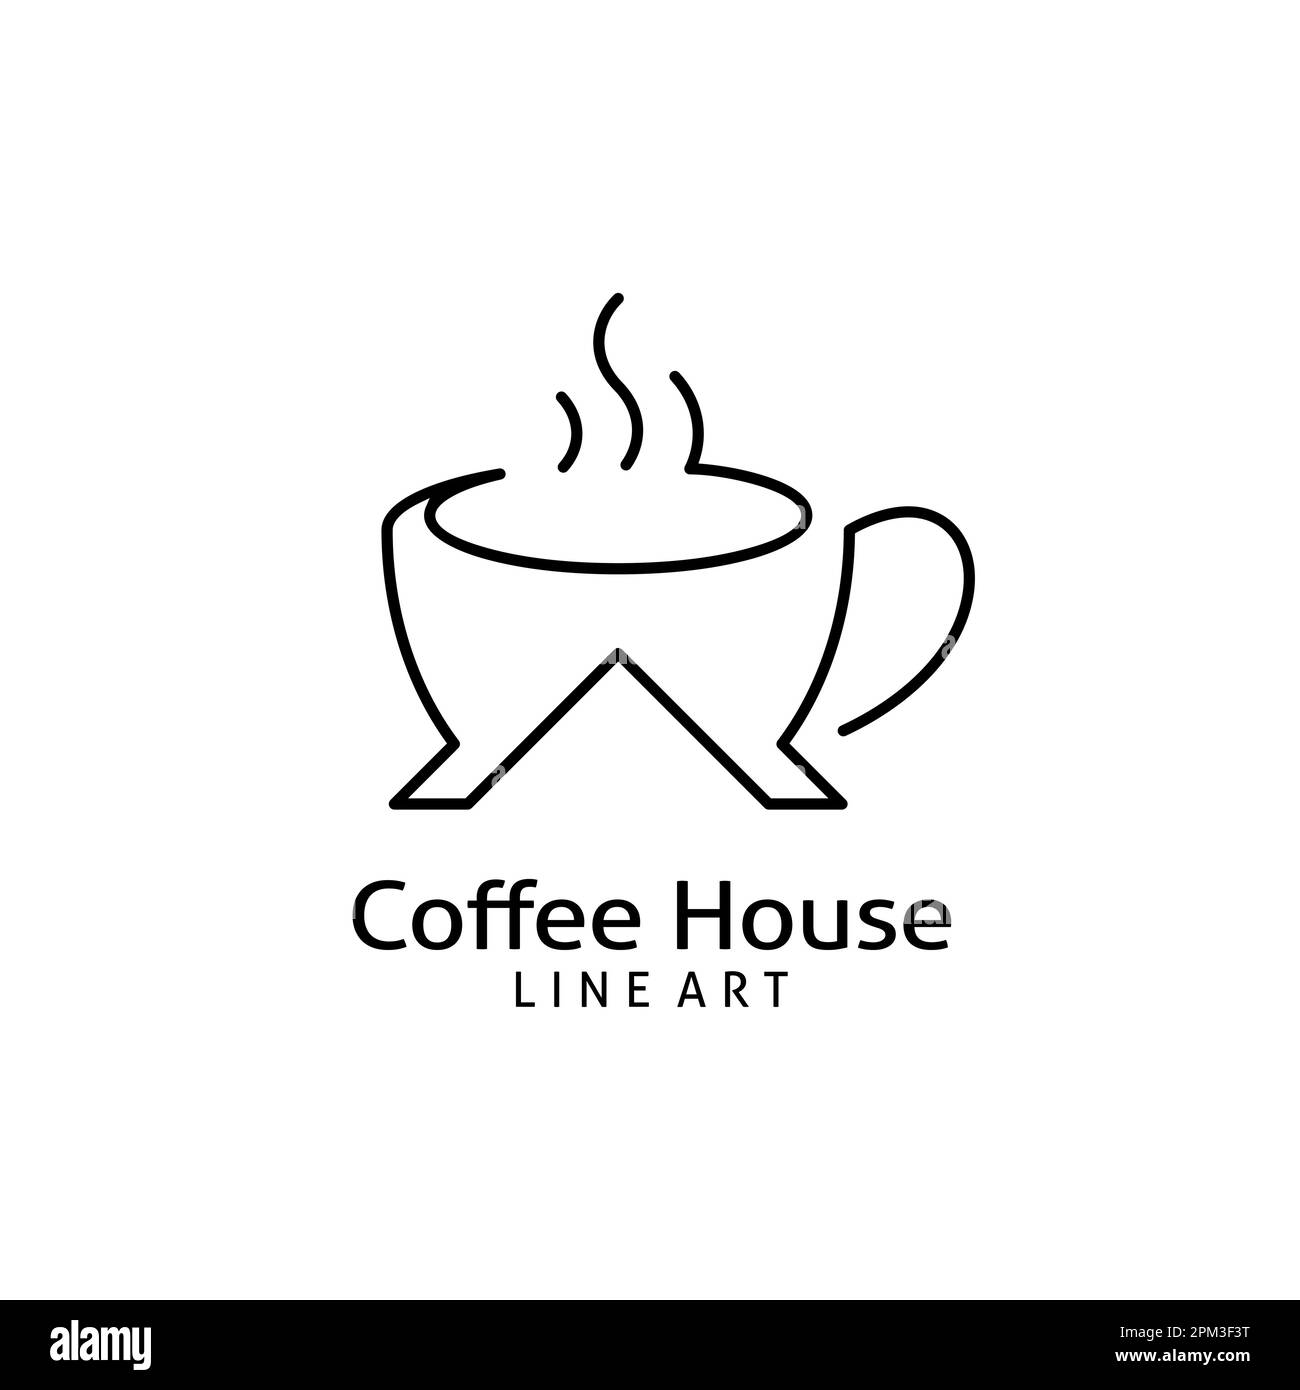 Dessin de la ligne du logo du café-restaurant Illustration de Vecteur